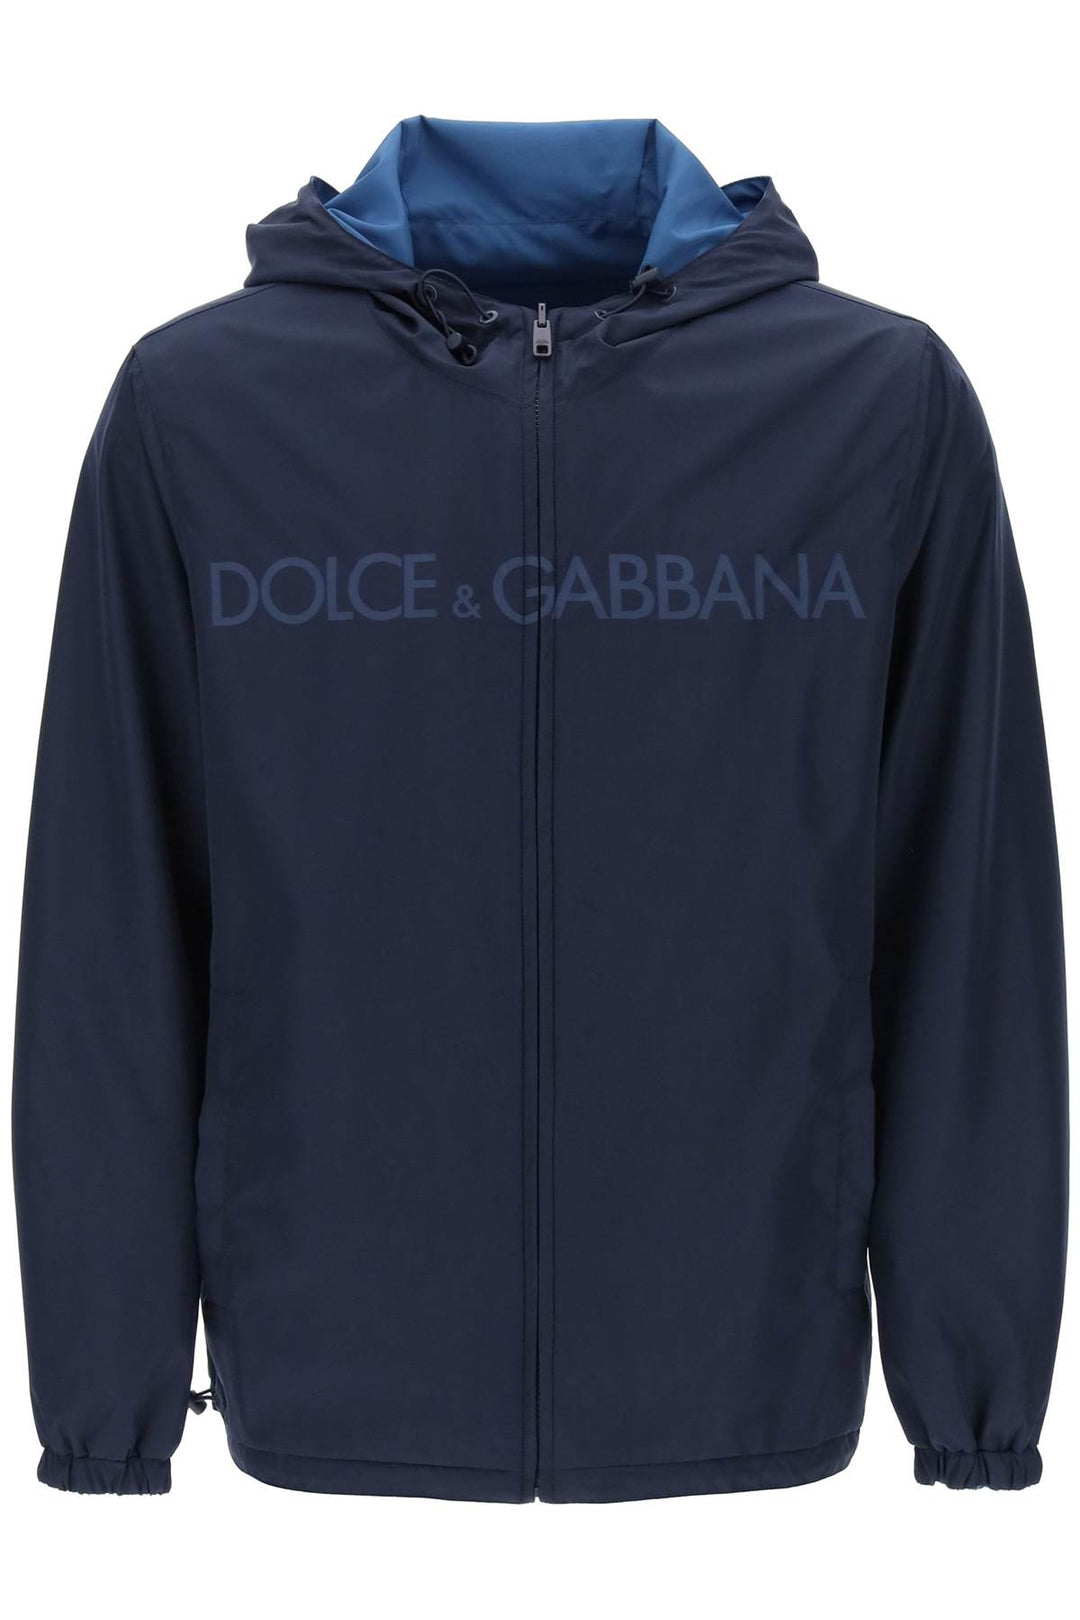 Dolce & Gabbana Reversible Windbreaker Jacket   Blu